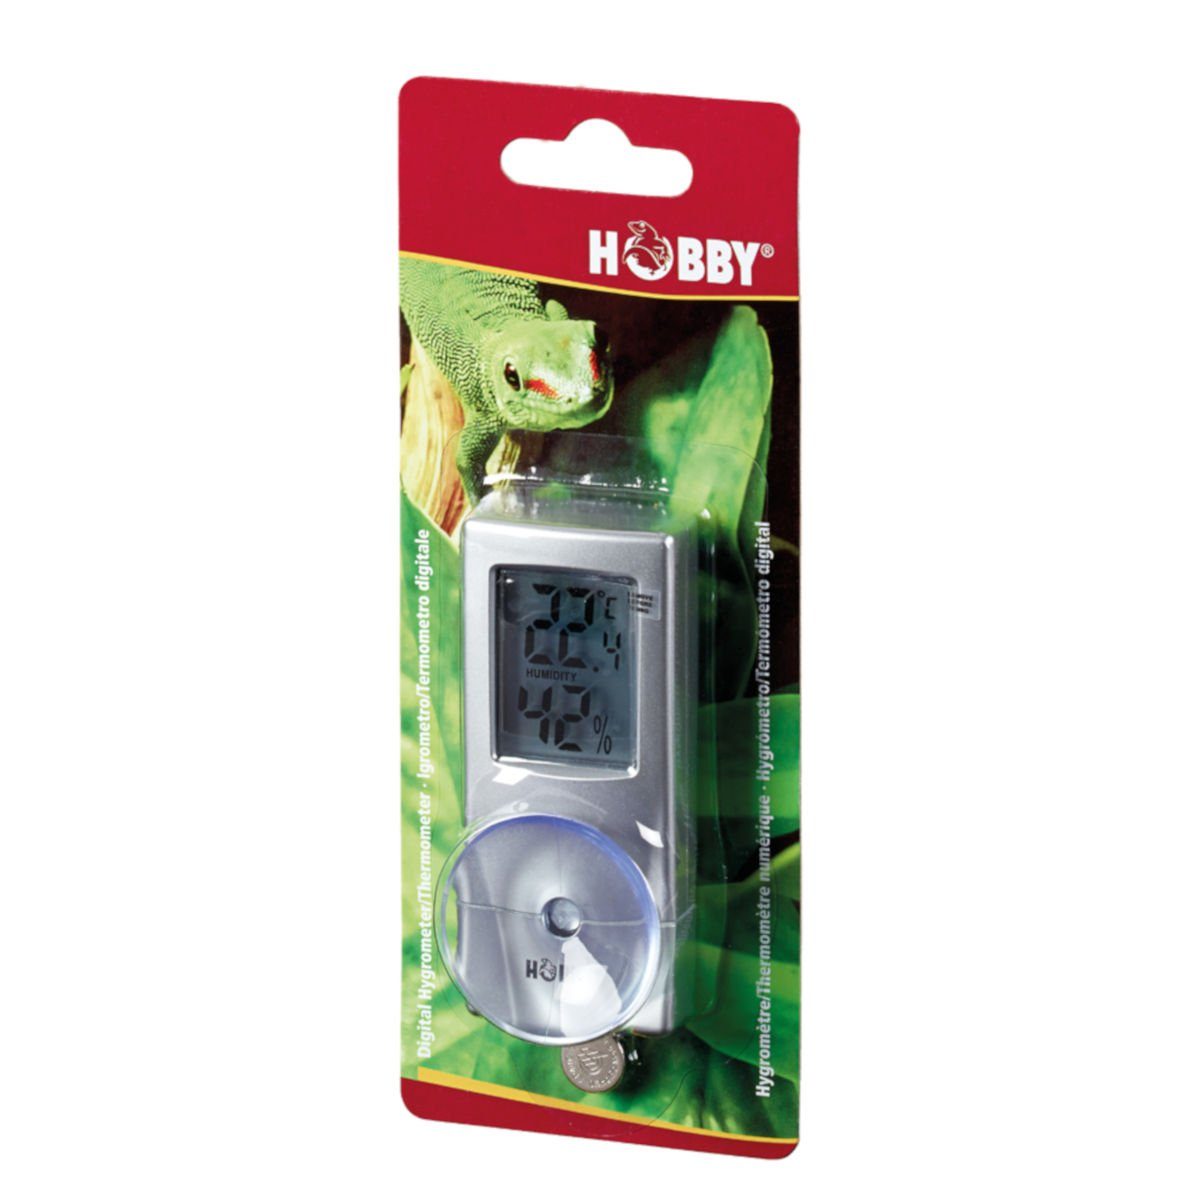 HOBBY Hygrometer Digitales (DHT2) Hygrometer/Thermometer